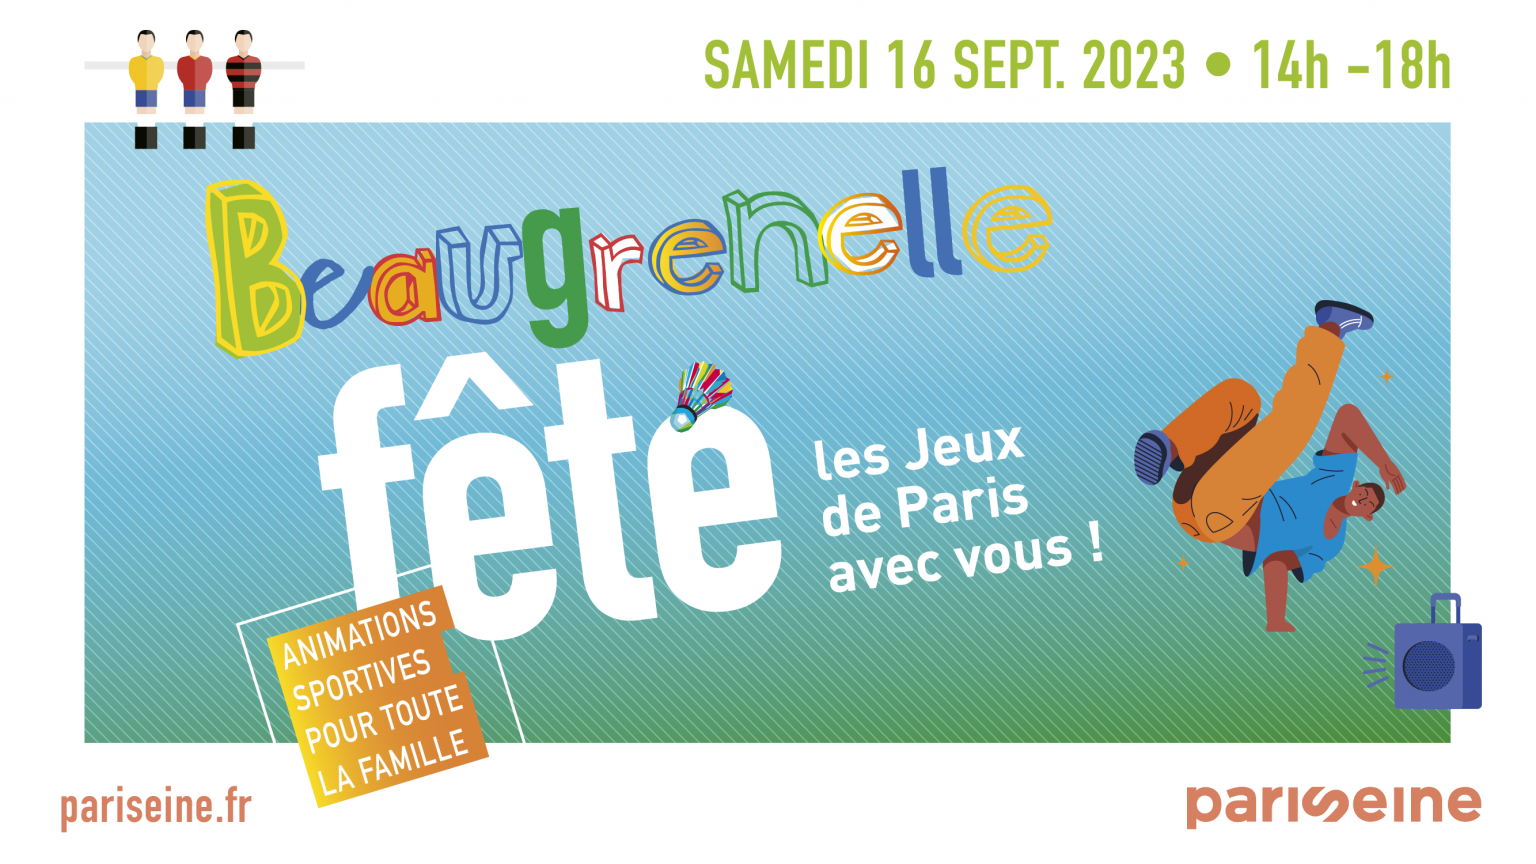 Affiche de Beaugrenelle en fête 2023 montrant un danseur de Break dance avec la mention Les Jeux de Paris avec vous !